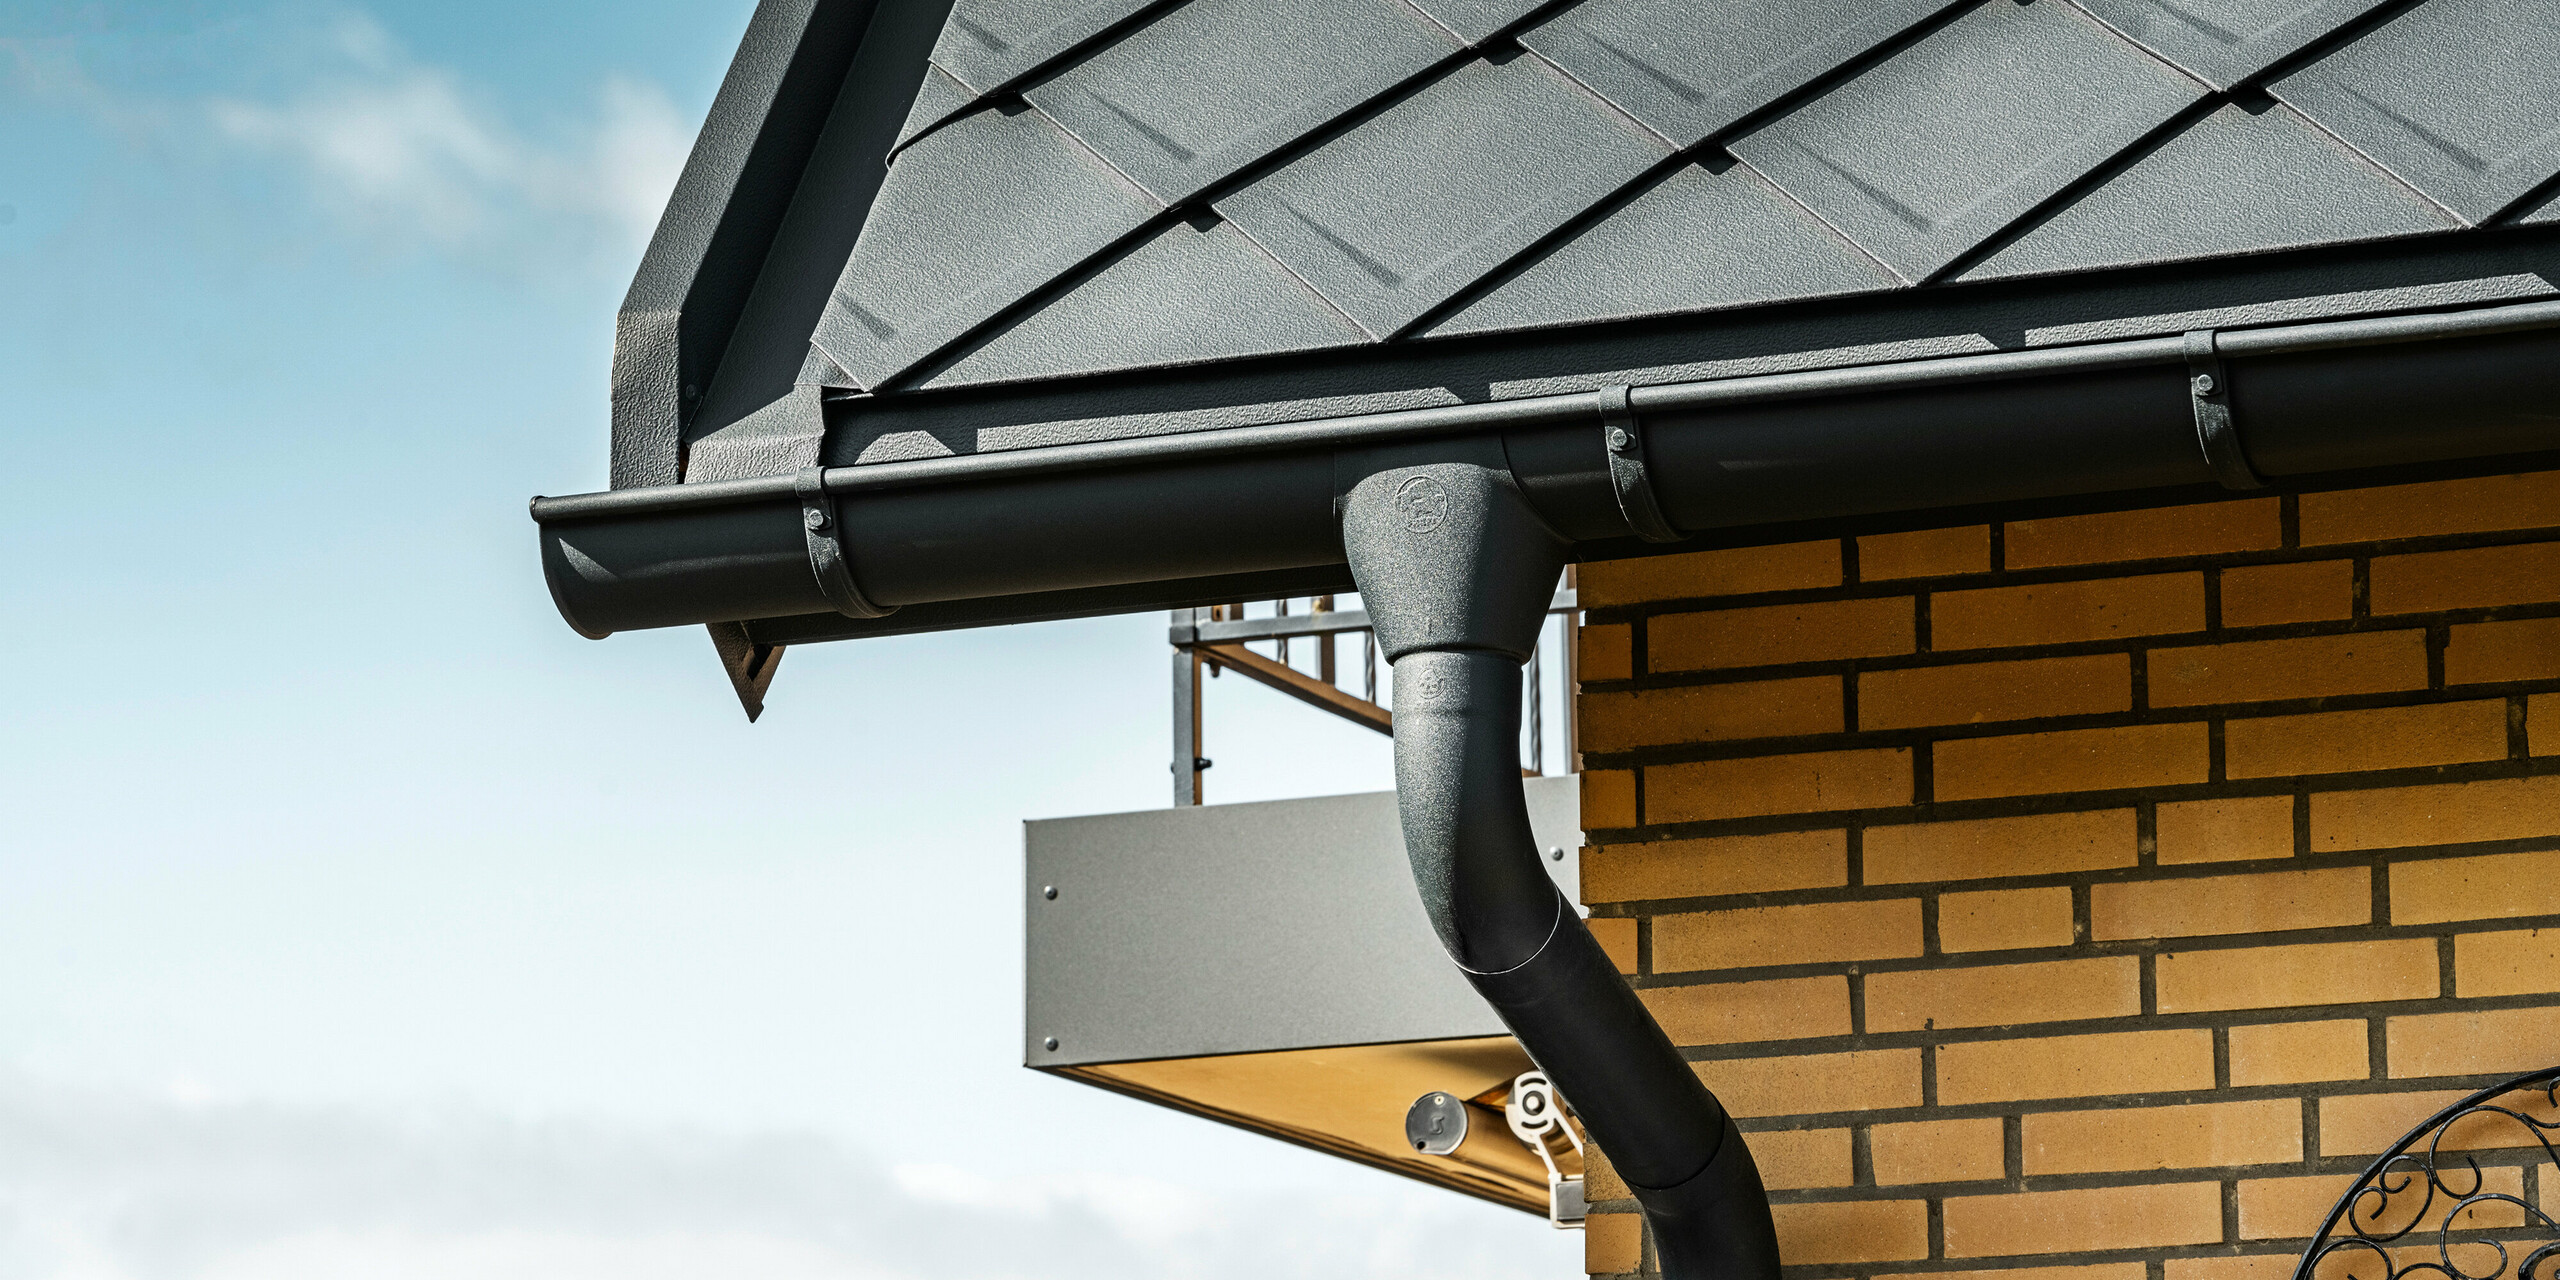 Detailansicht des PREFA Dachentwässerungssystems eines Einfamilienhauses mit anthrazitfarbenen PREFA Dachraute 29×29, welche im Hintergrund am Dach hervorstechen. Zu sehen ist die Hängerinne und das Ablaufrohr in P.10 Anthrazit, die sich nahtlos in das Gesamtdesign einfügen. Die gelben Backsteinwände des Hauses bieten einen natürlichen Farbkontrast zum modernen Dachsystem aus Aluminium.